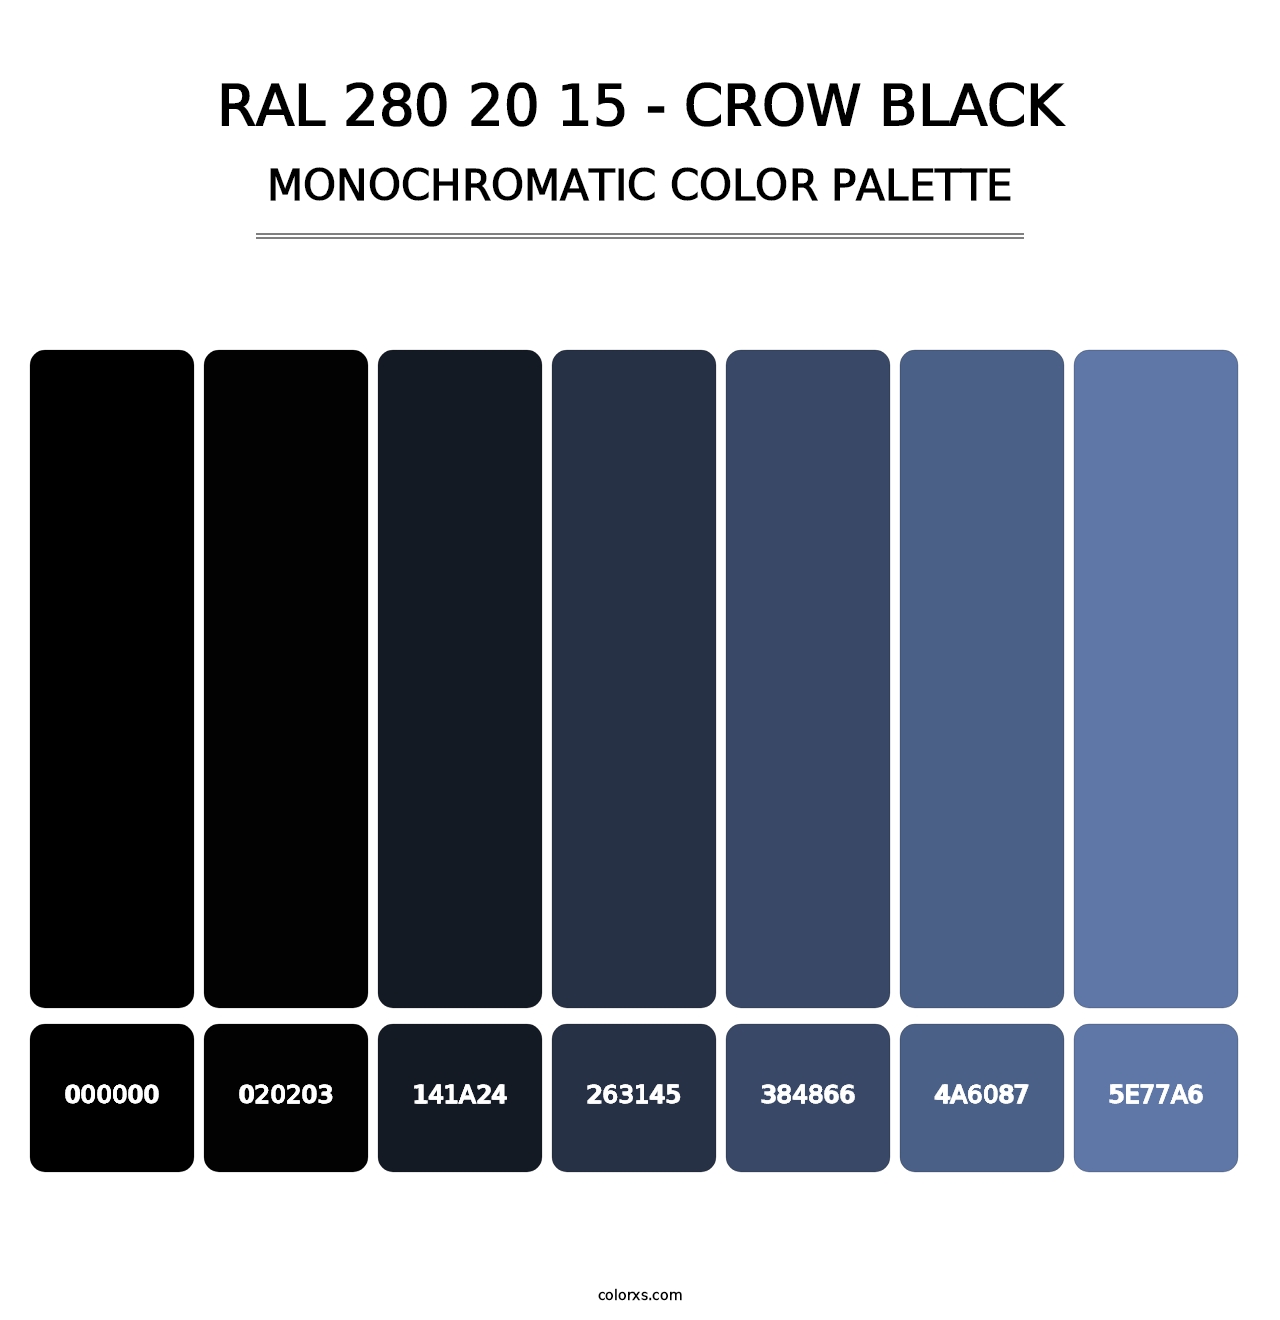 RAL 280 20 15 - Crow Black - Monochromatic Color Palette